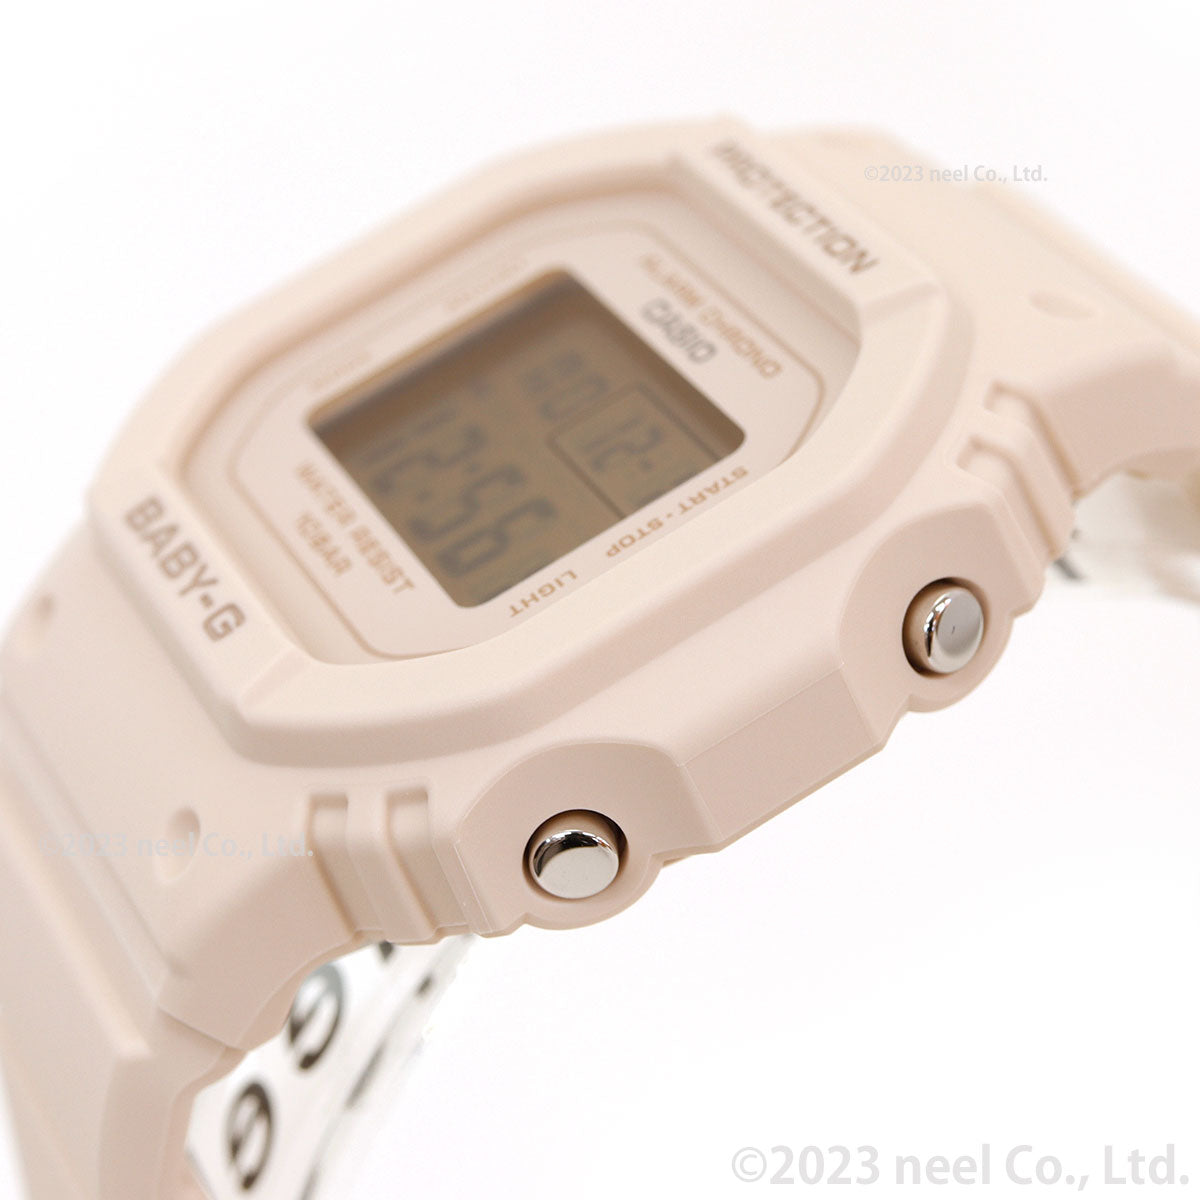 BABY-G カシオ ベビーG レディース デジタル 腕時計 BGD-565U-4JF ピンクベージュ